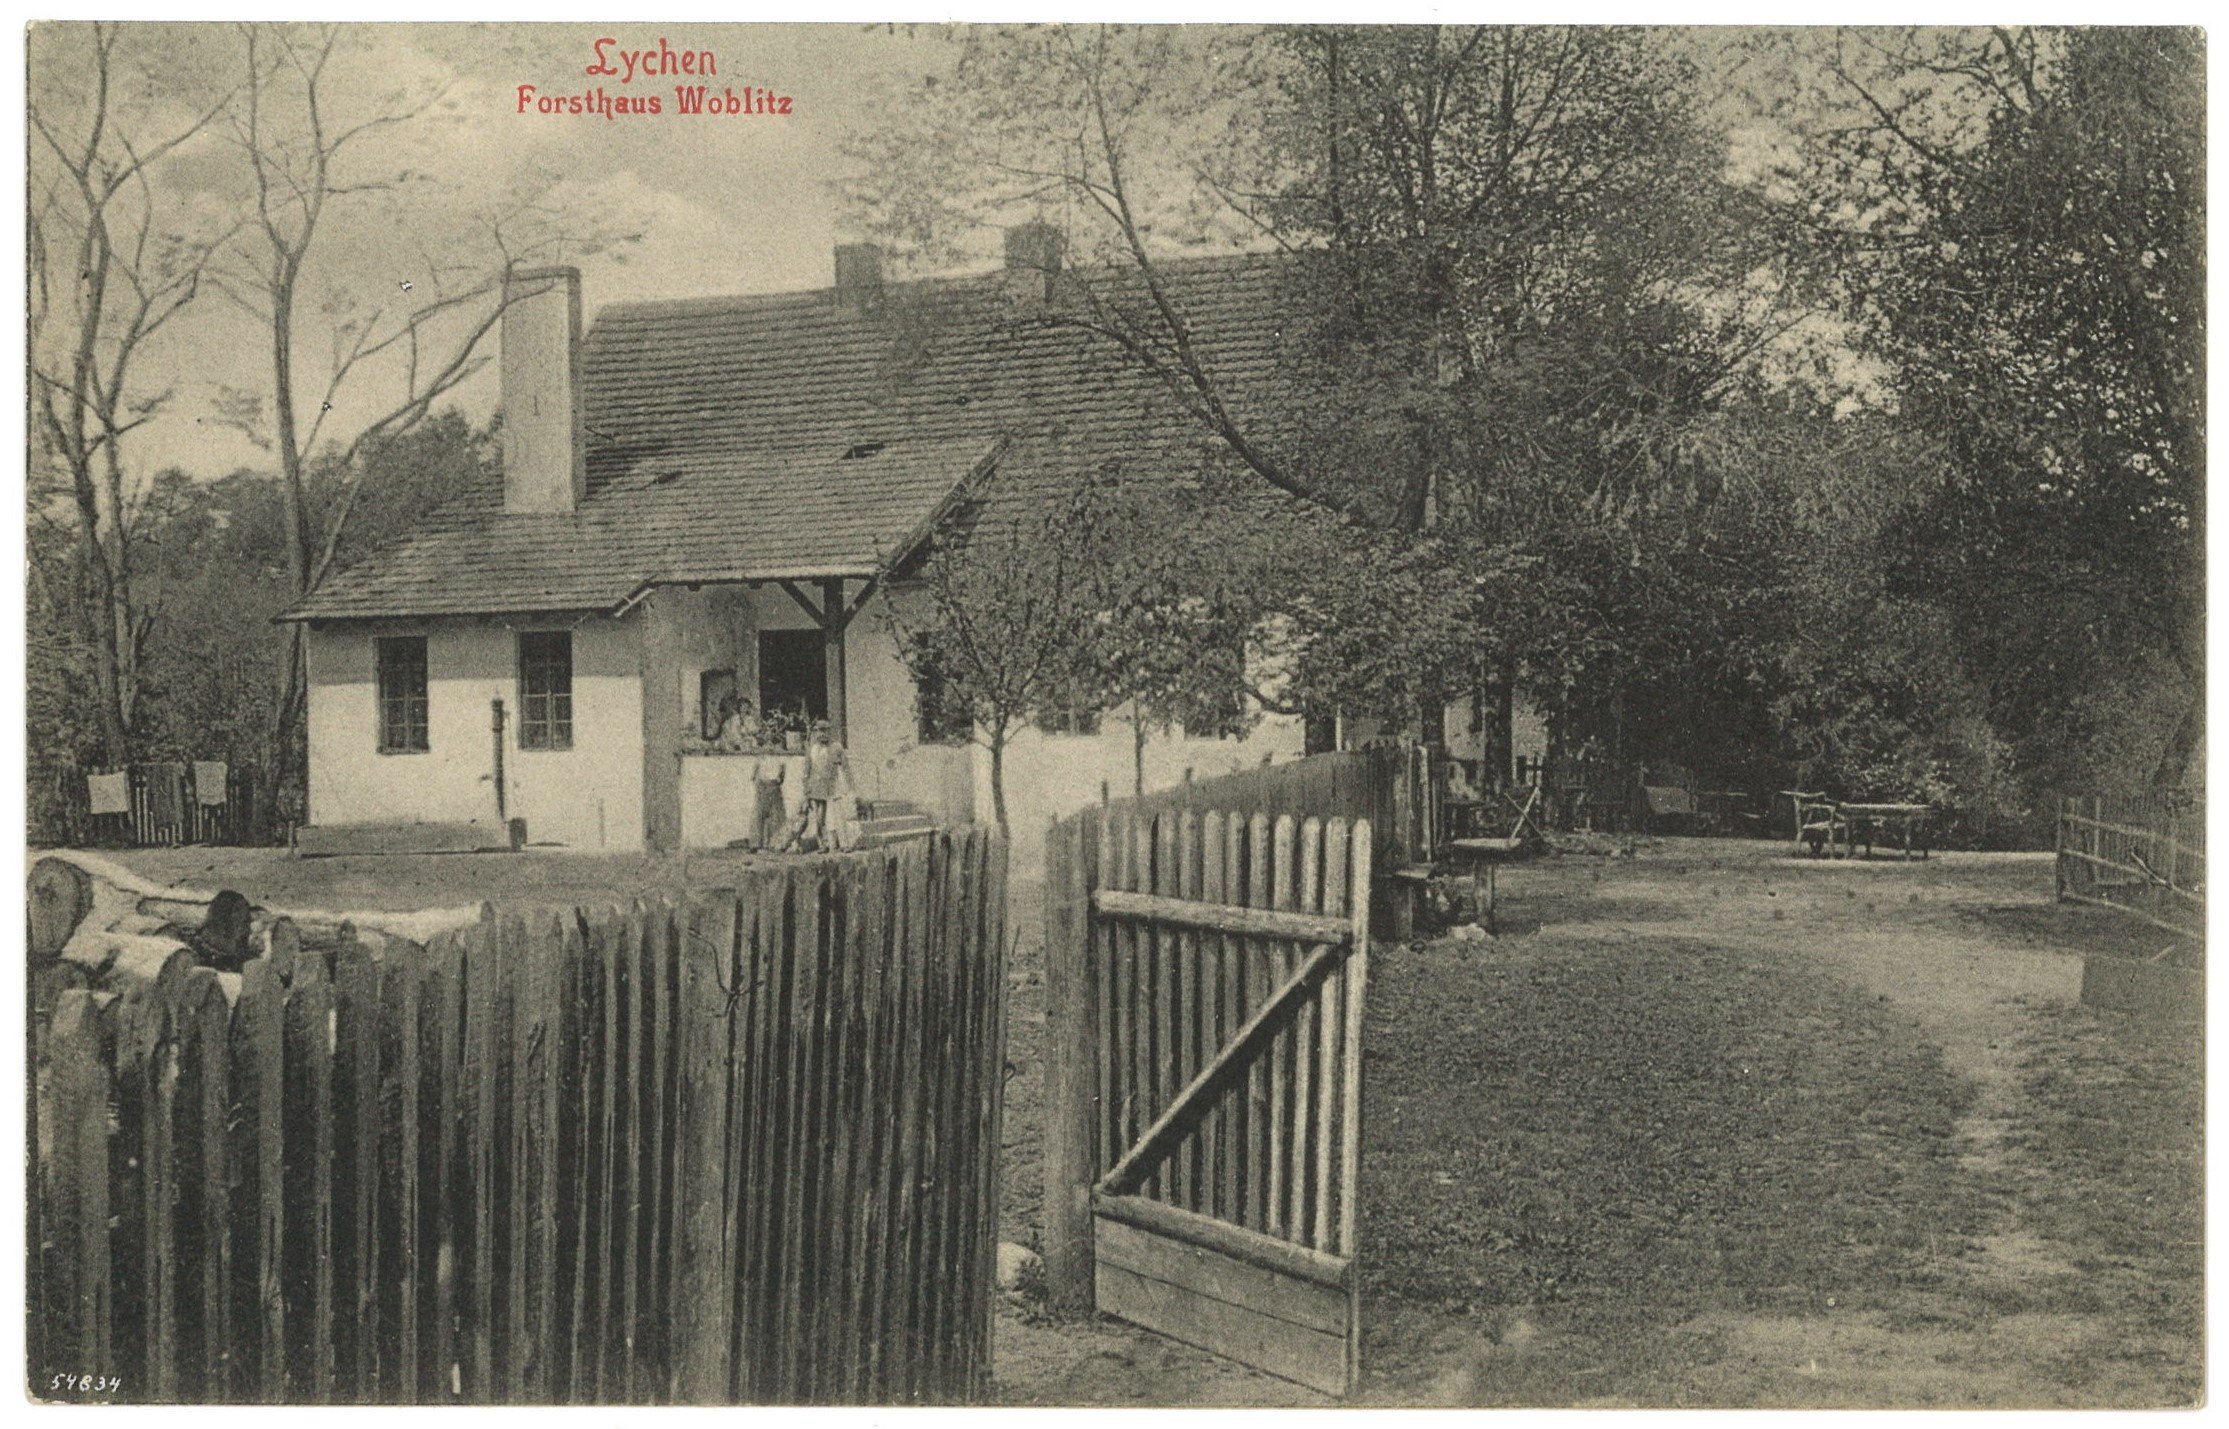 Lychen: Forsthaus Woblitz (Landesgeschichtliche Vereinigung für die Mark Brandenburg e.V. CC BY)